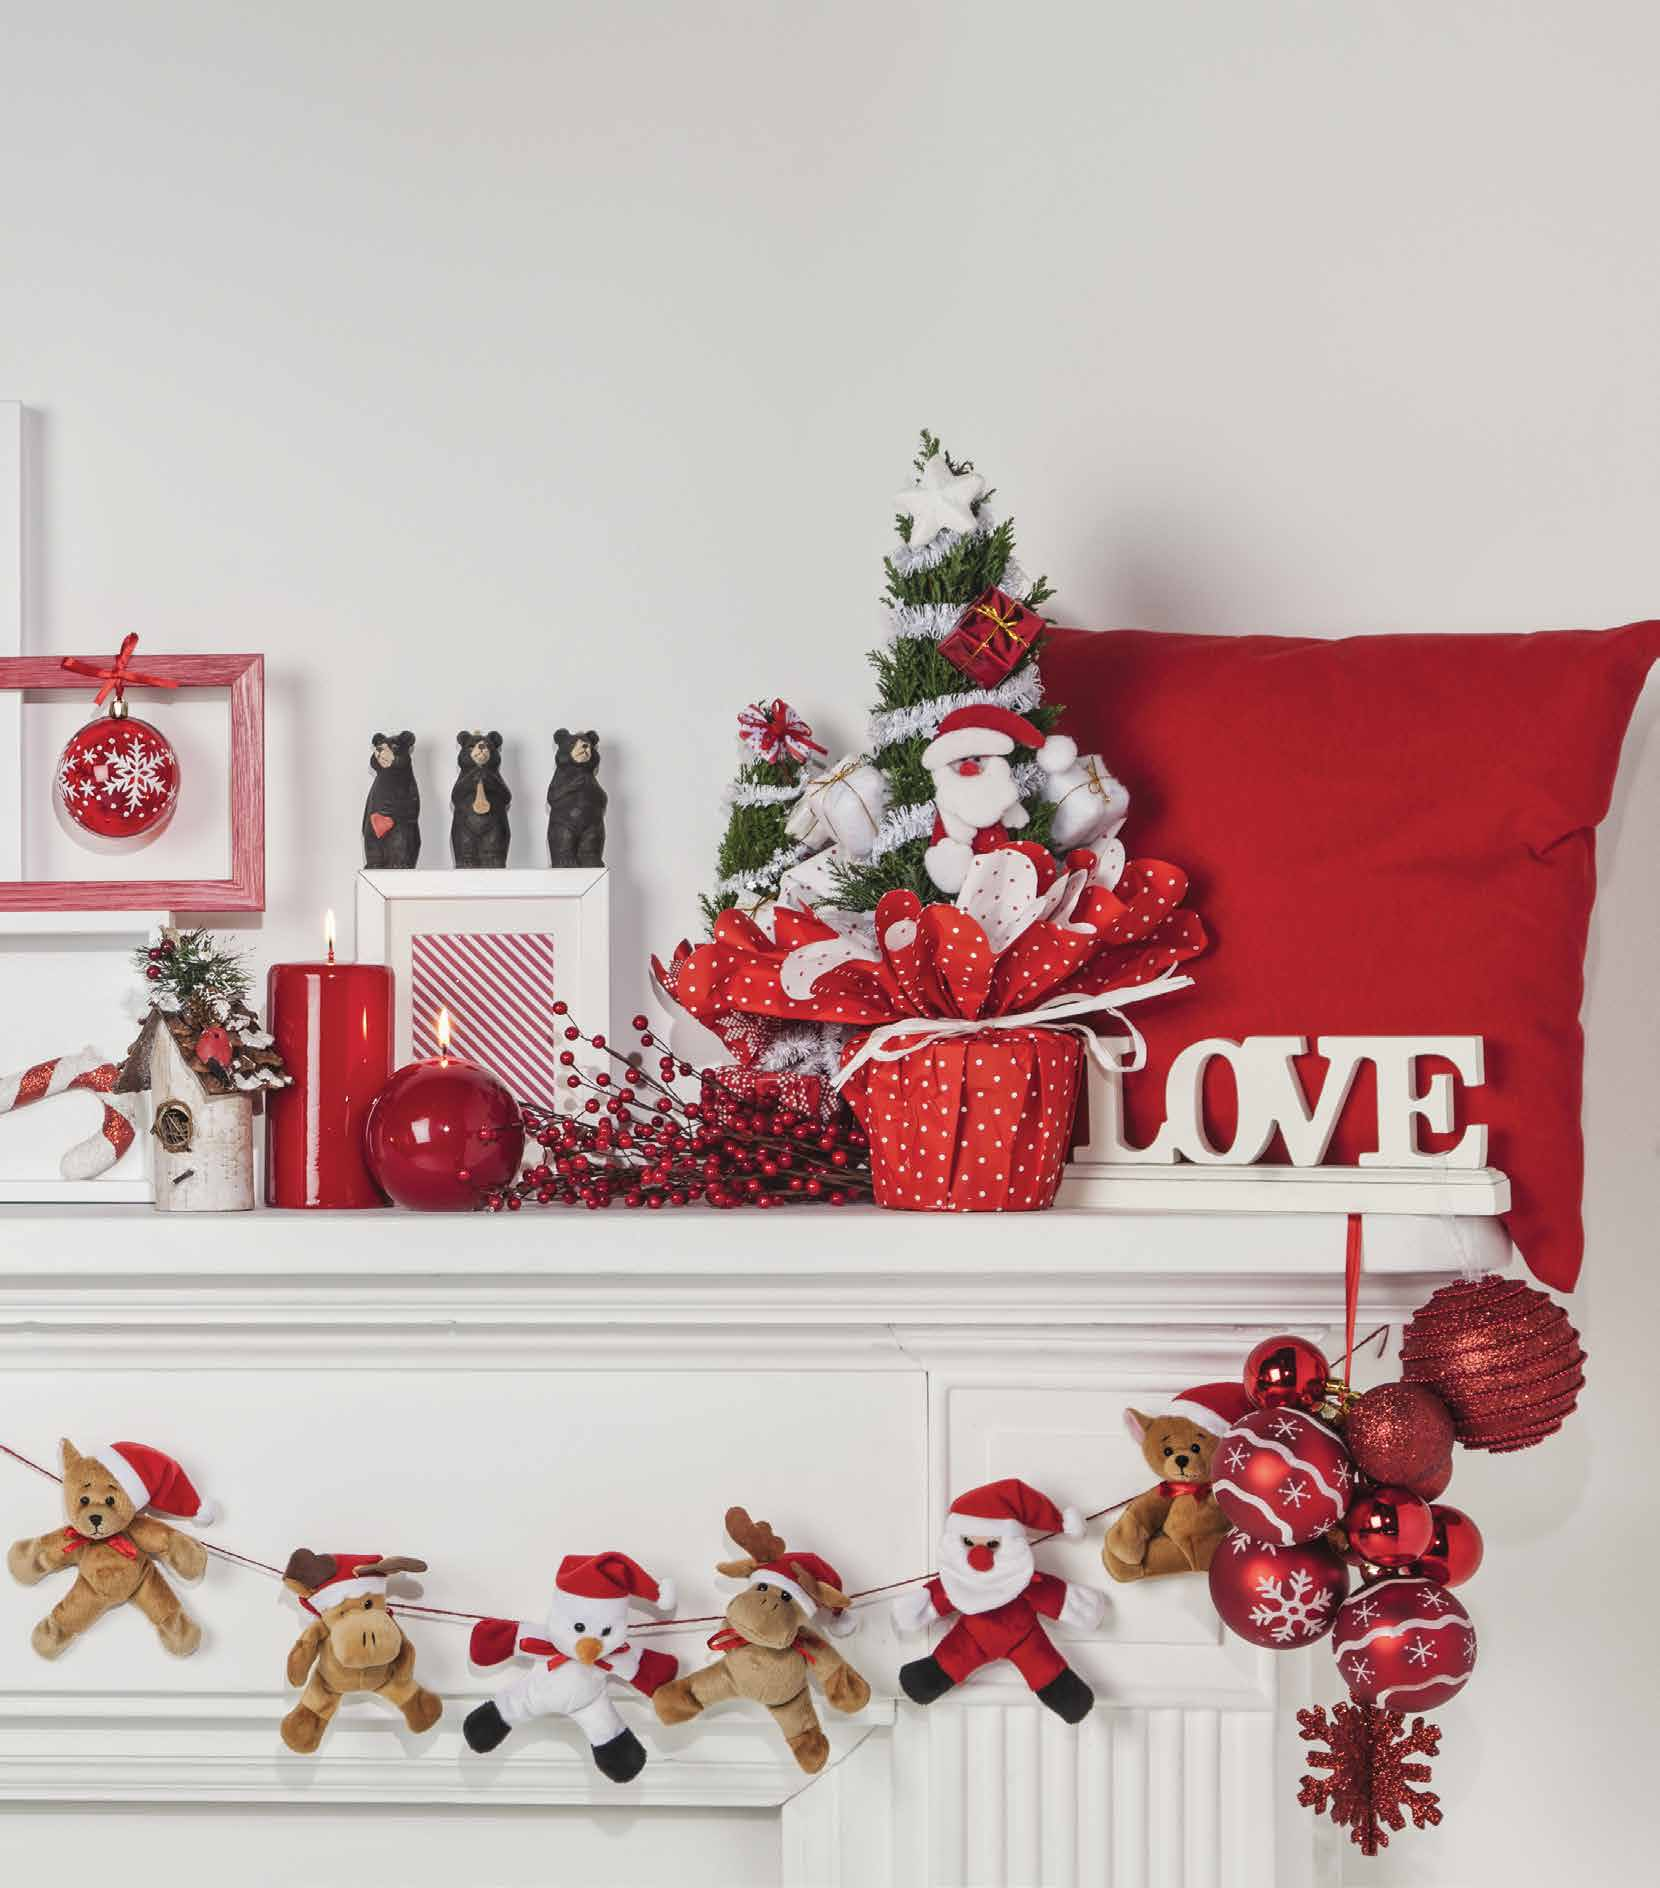 Il Natale è una casa vestita di rosso Un'esplosione di rosso e bianco: le tradizioni rivivono, in una ricchissima scelta di addobbi e decorazioni dallo stile classico.